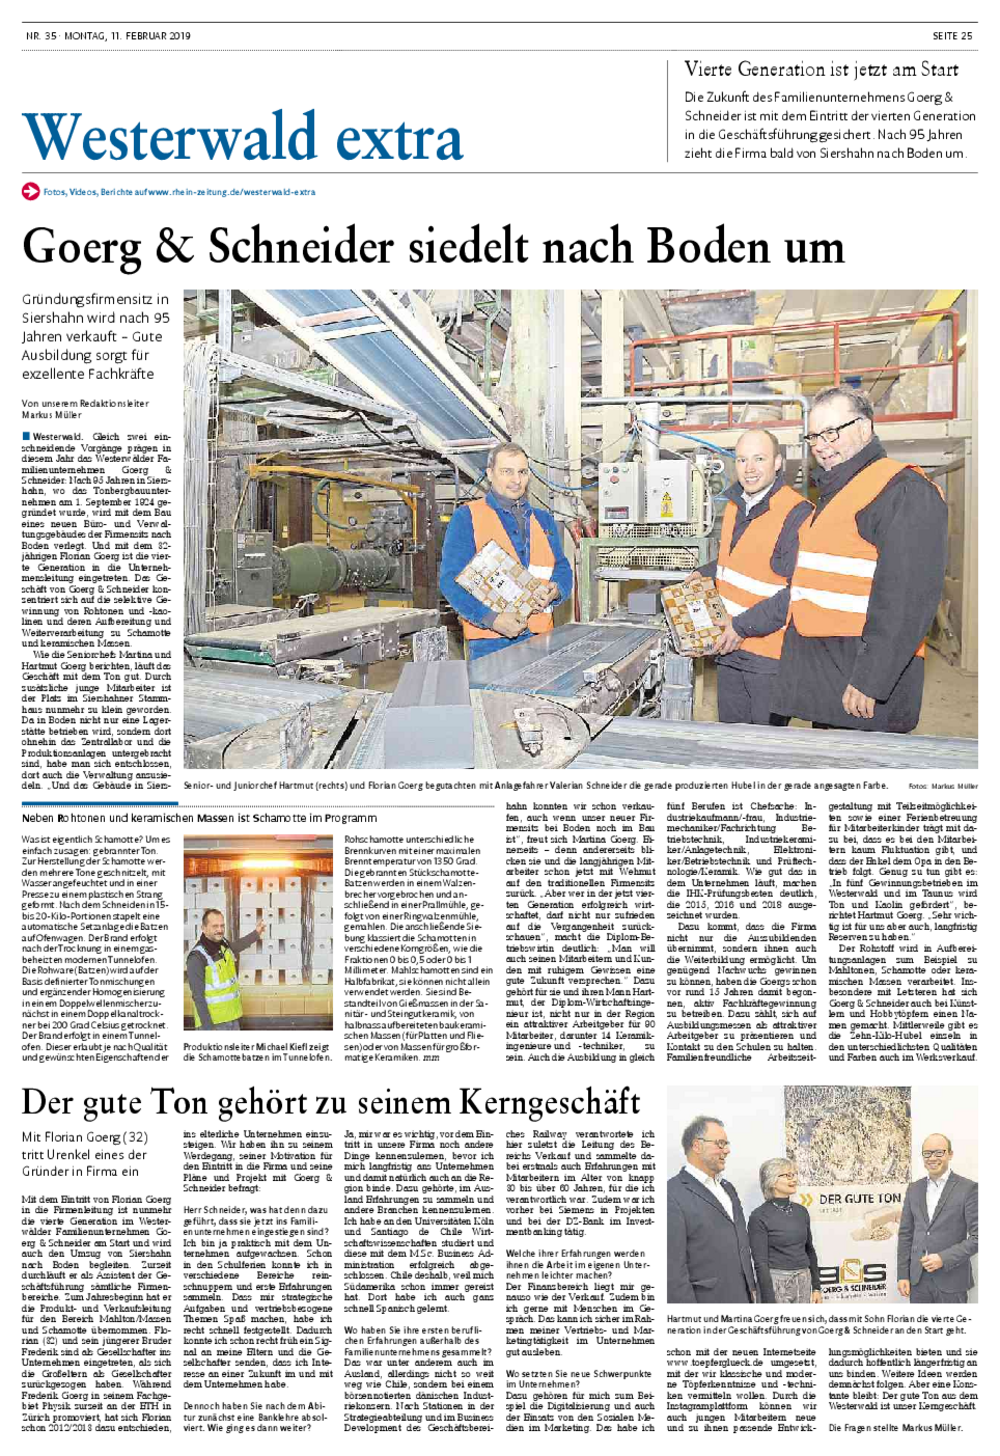 Artikel Rheinzeitung 11.02.2019